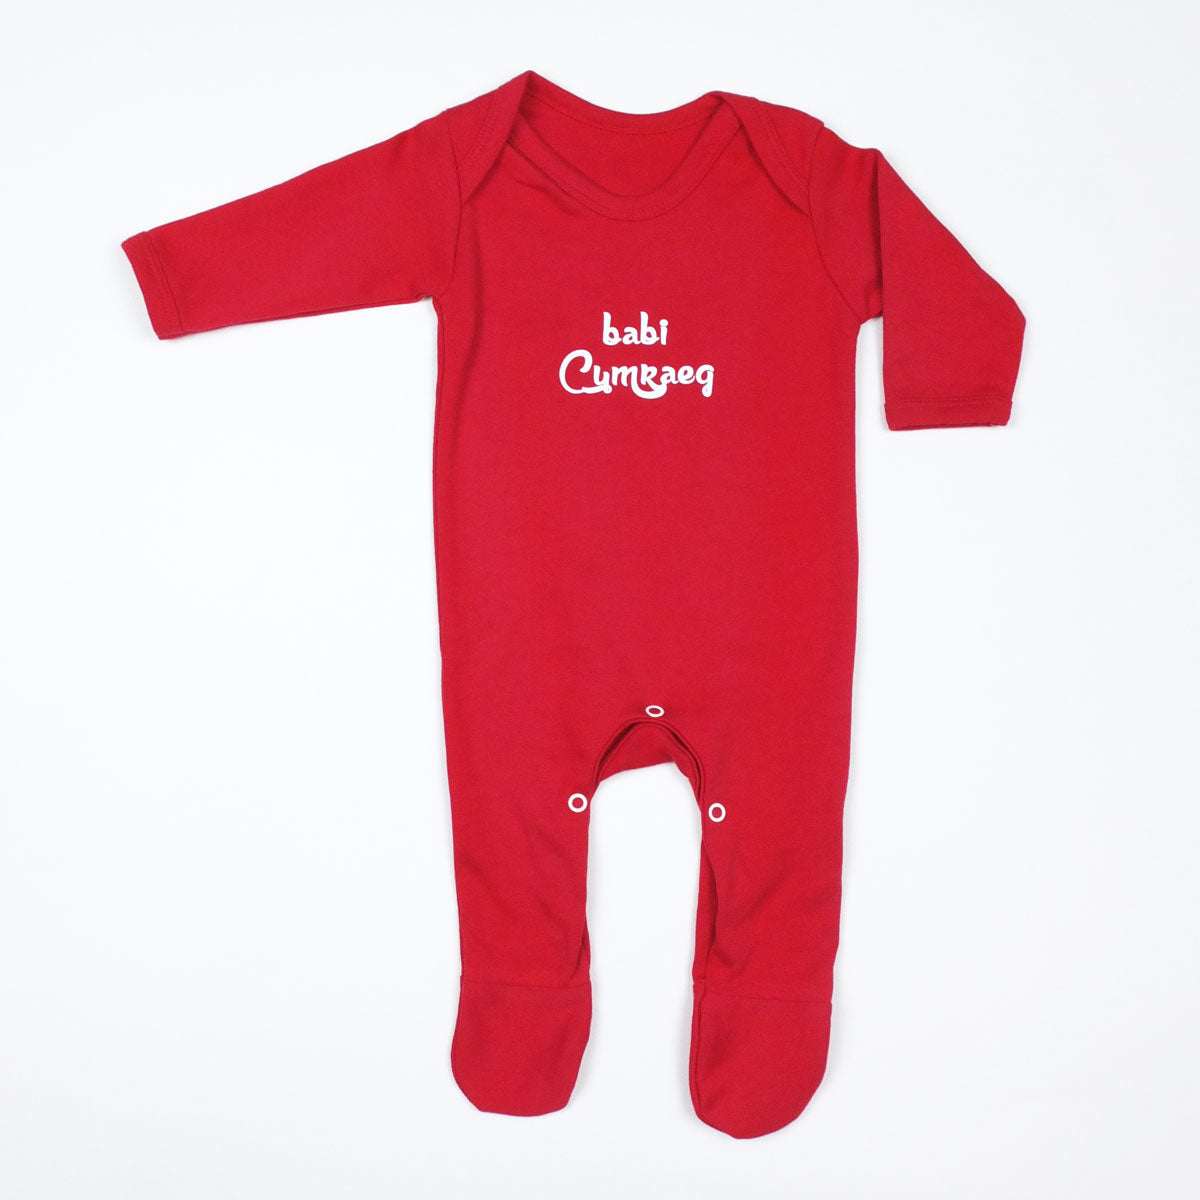 Babi Cymraeg Baby Sleepsuit Red